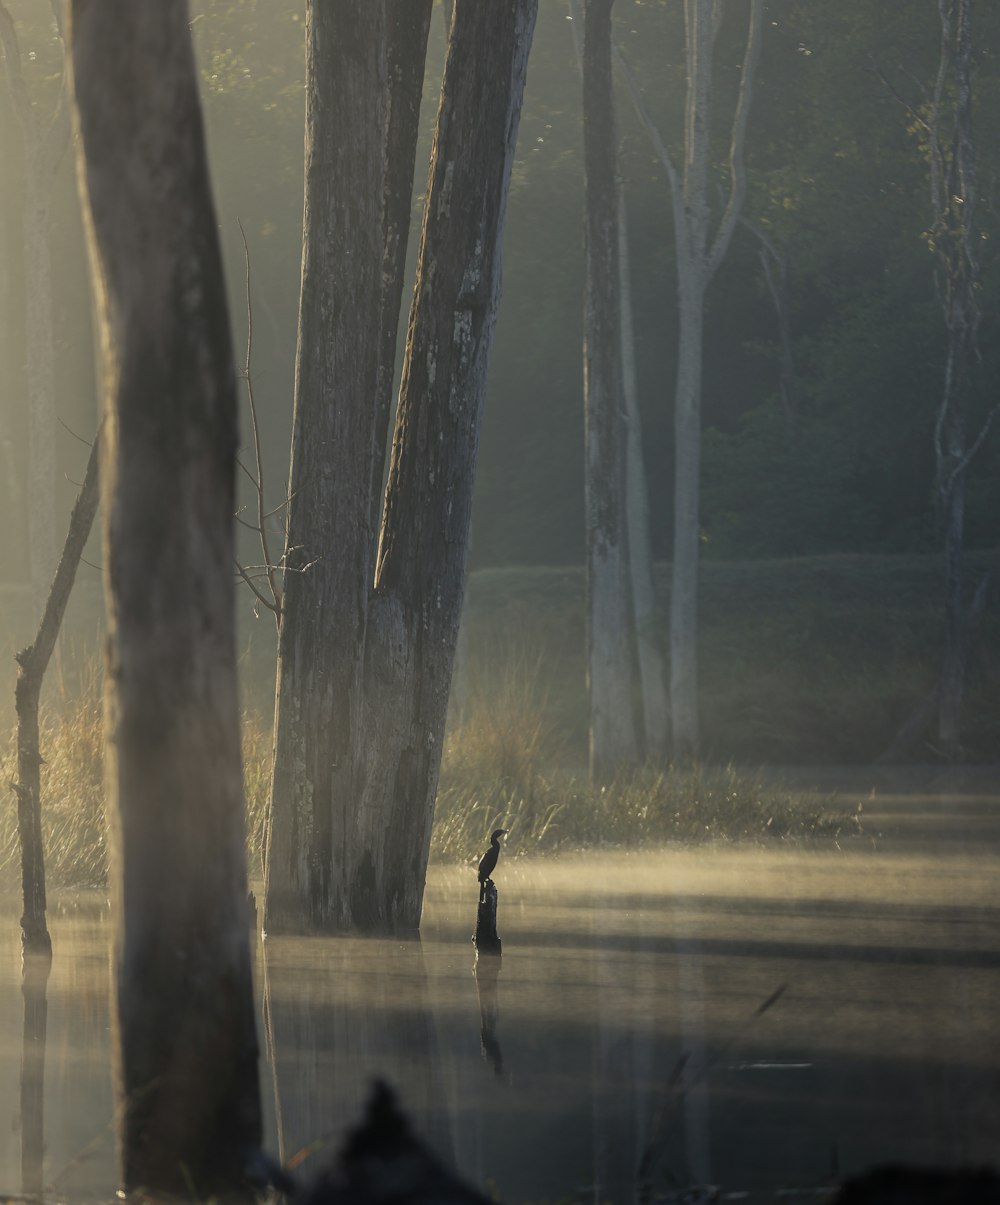 Una persona parada en medio de un lago rodeado de árboles